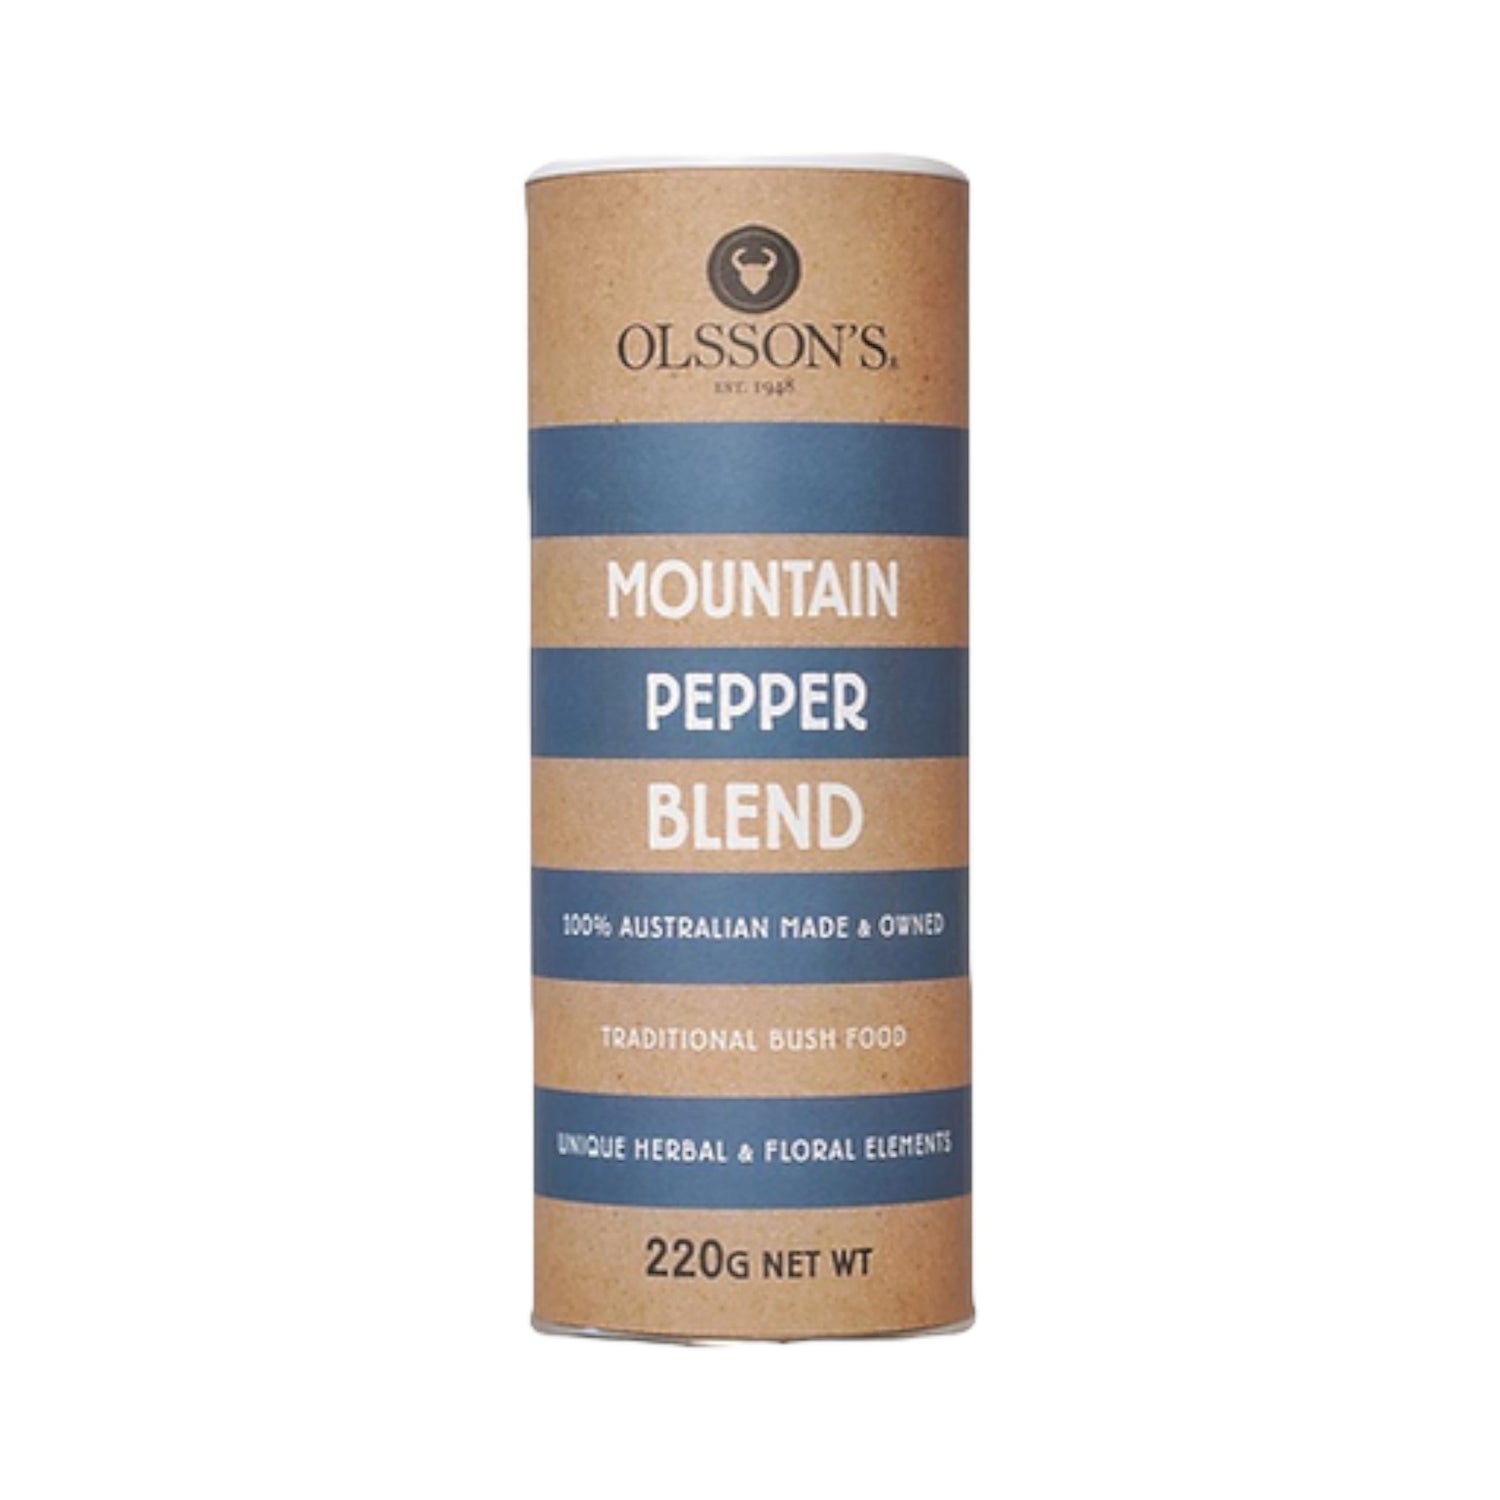 Mountain Pepper Blend